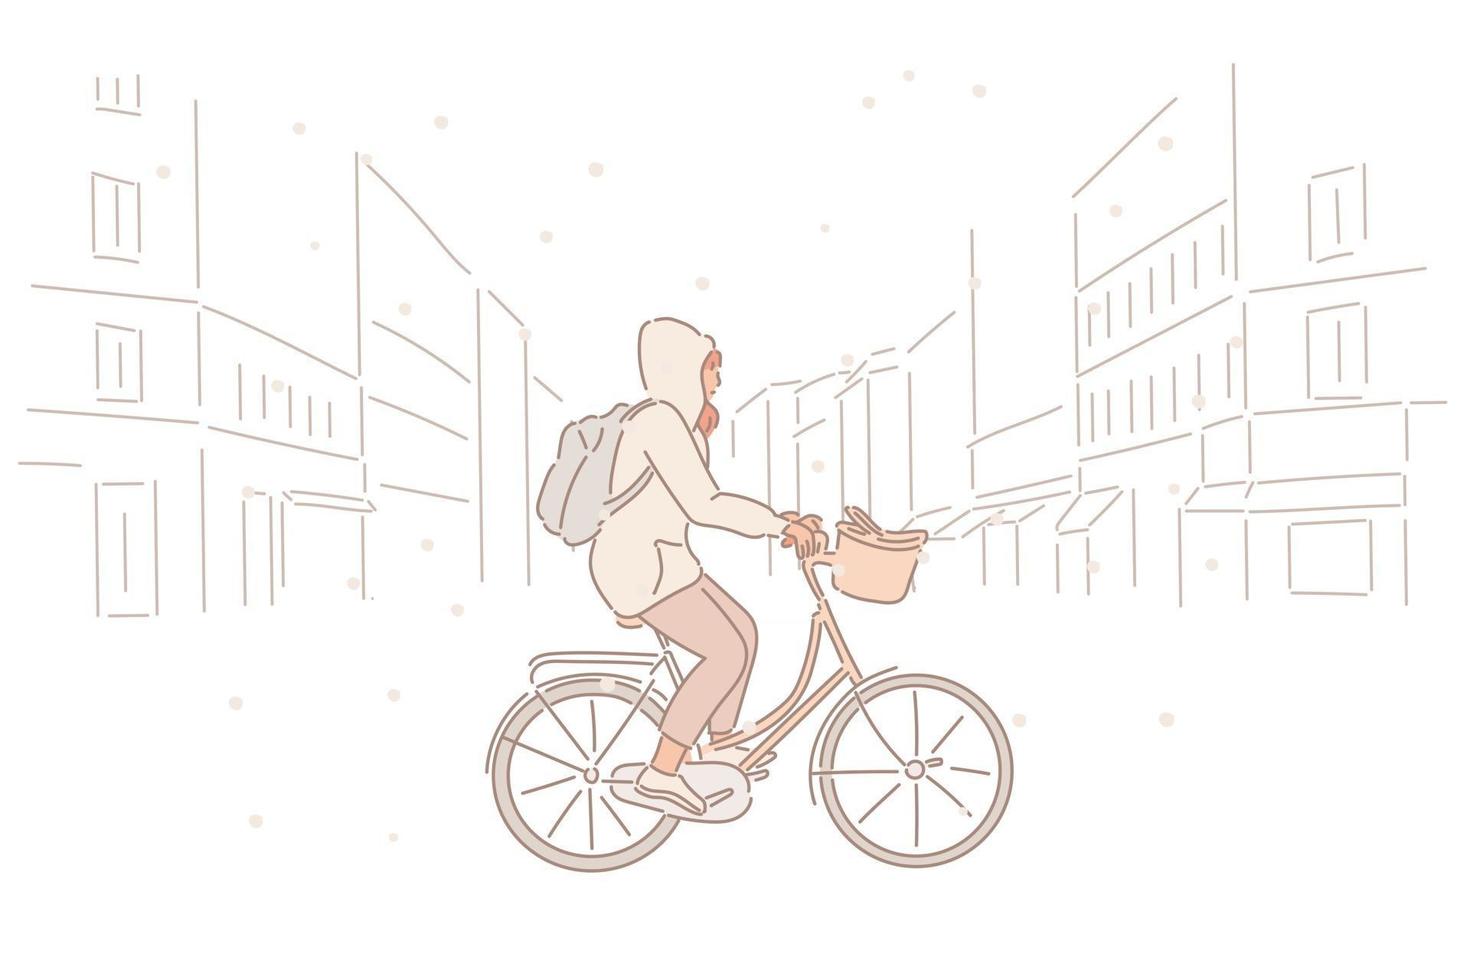 una donna sta andando in bicicletta per strada in una giornata nevosa. illustrazioni di disegno vettoriale stile disegnato a mano.